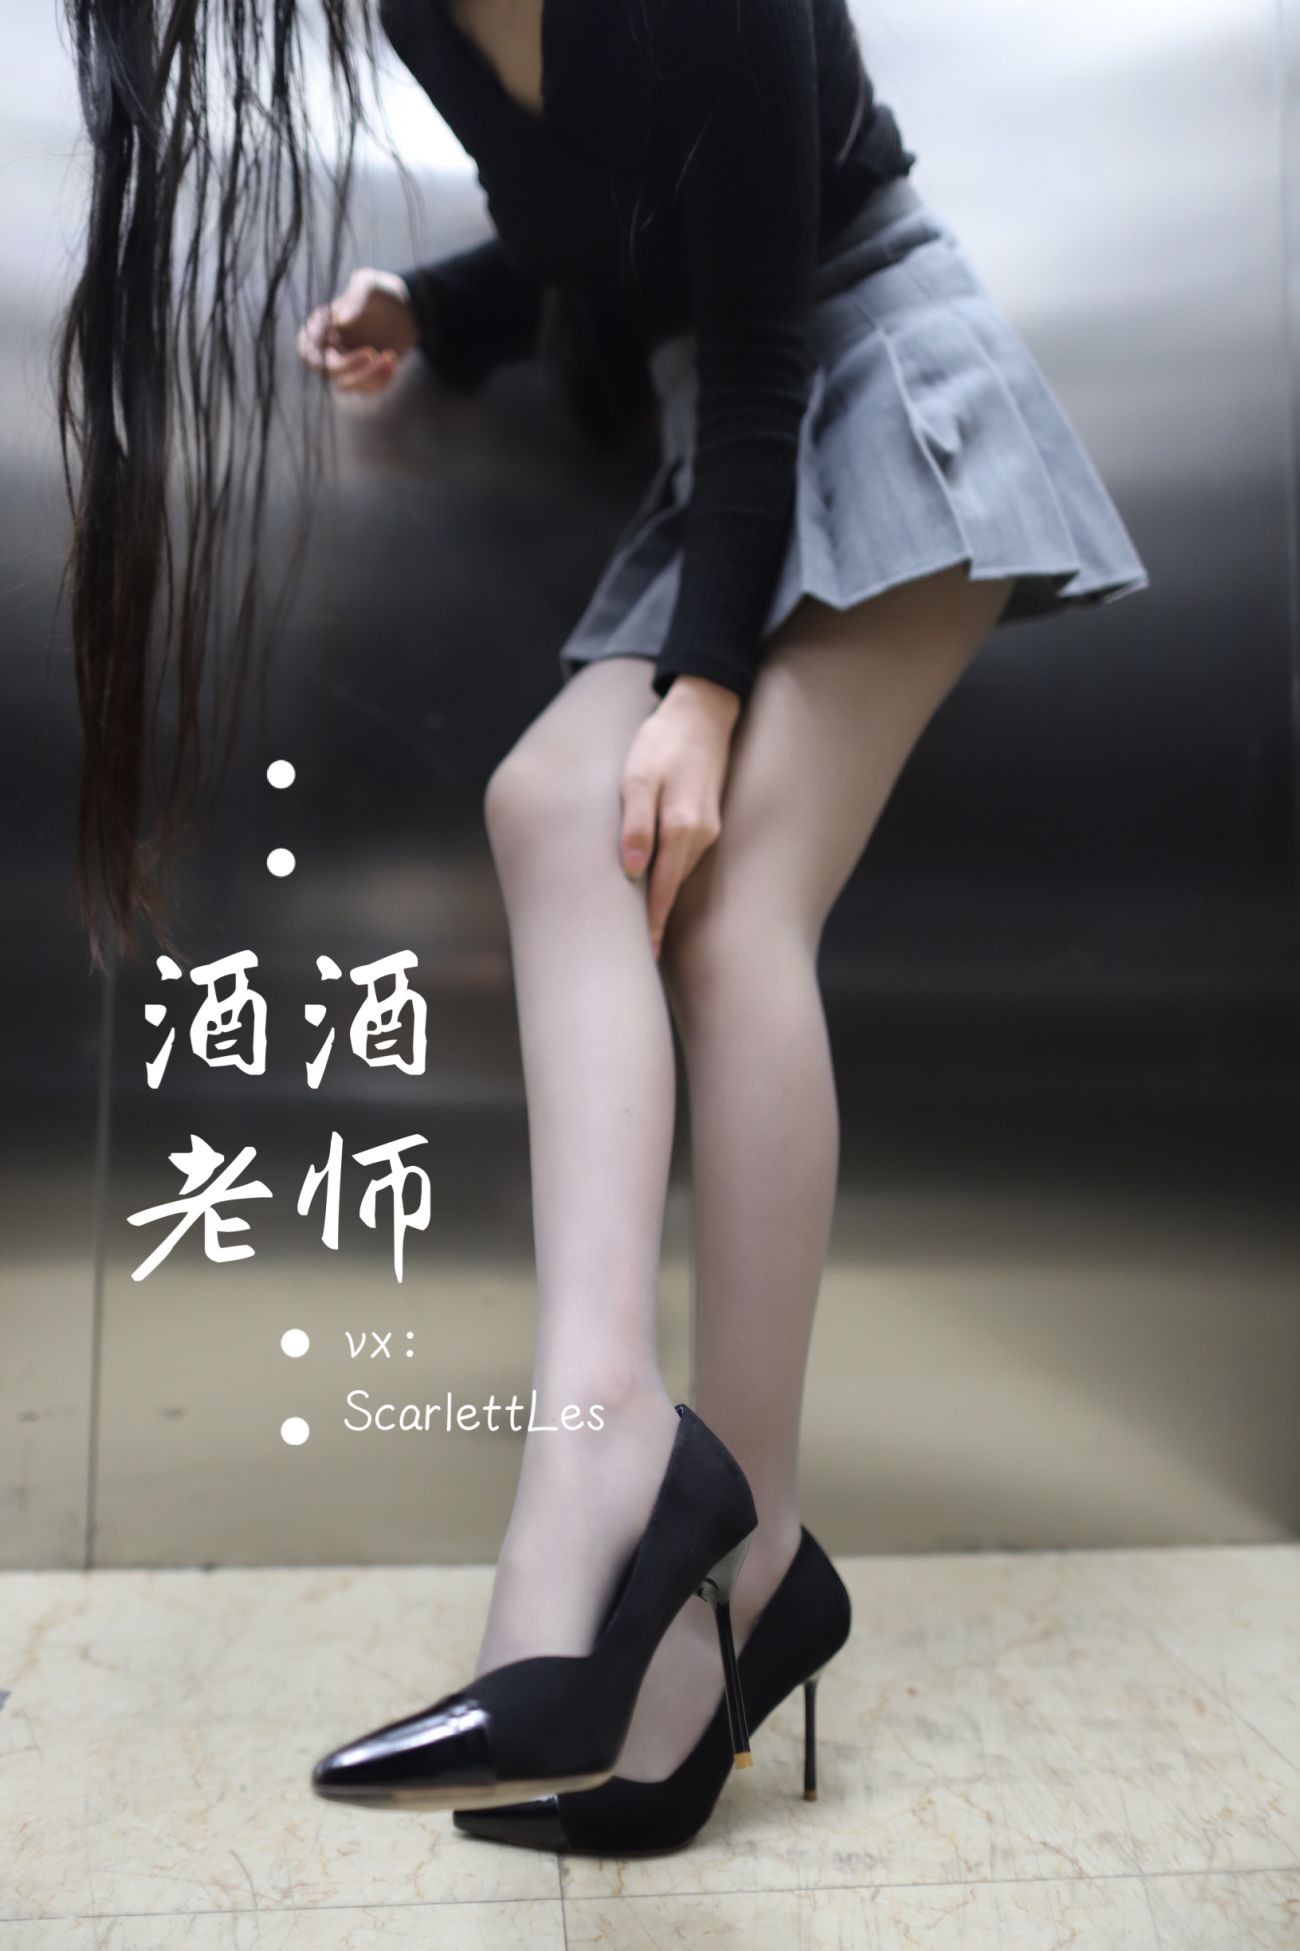 老师的电梯灰丝秘事 (13)